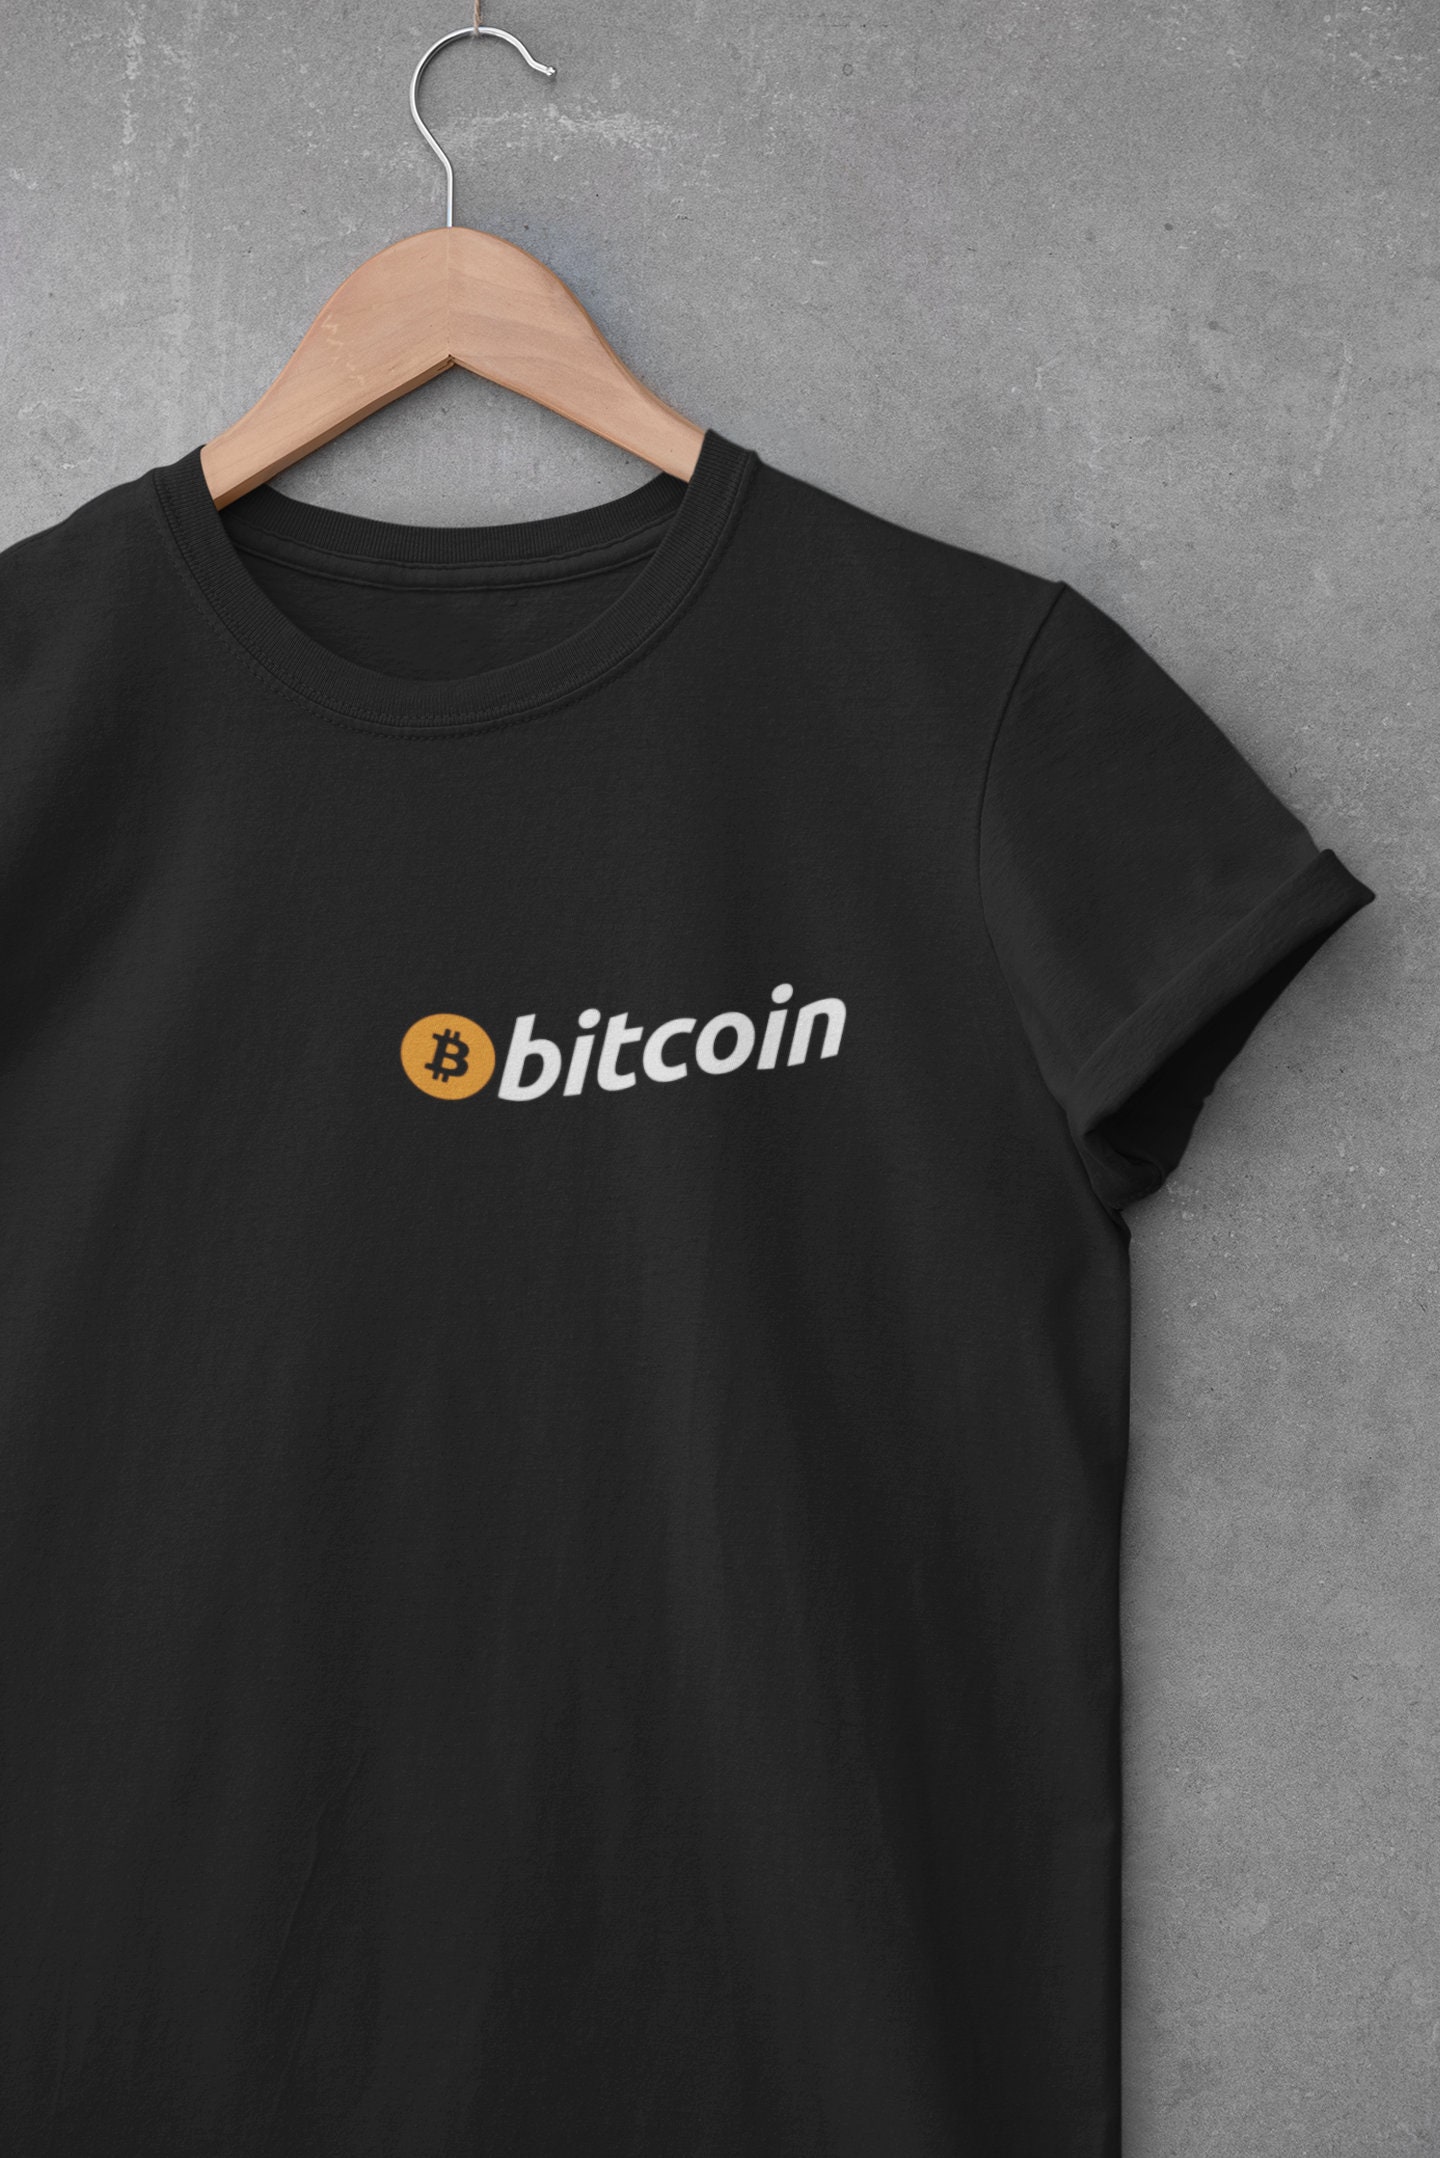 Bitcoin BTC dimensioni del logo su tasca T-shirt valuta Crypto Unisex Top Regalo 